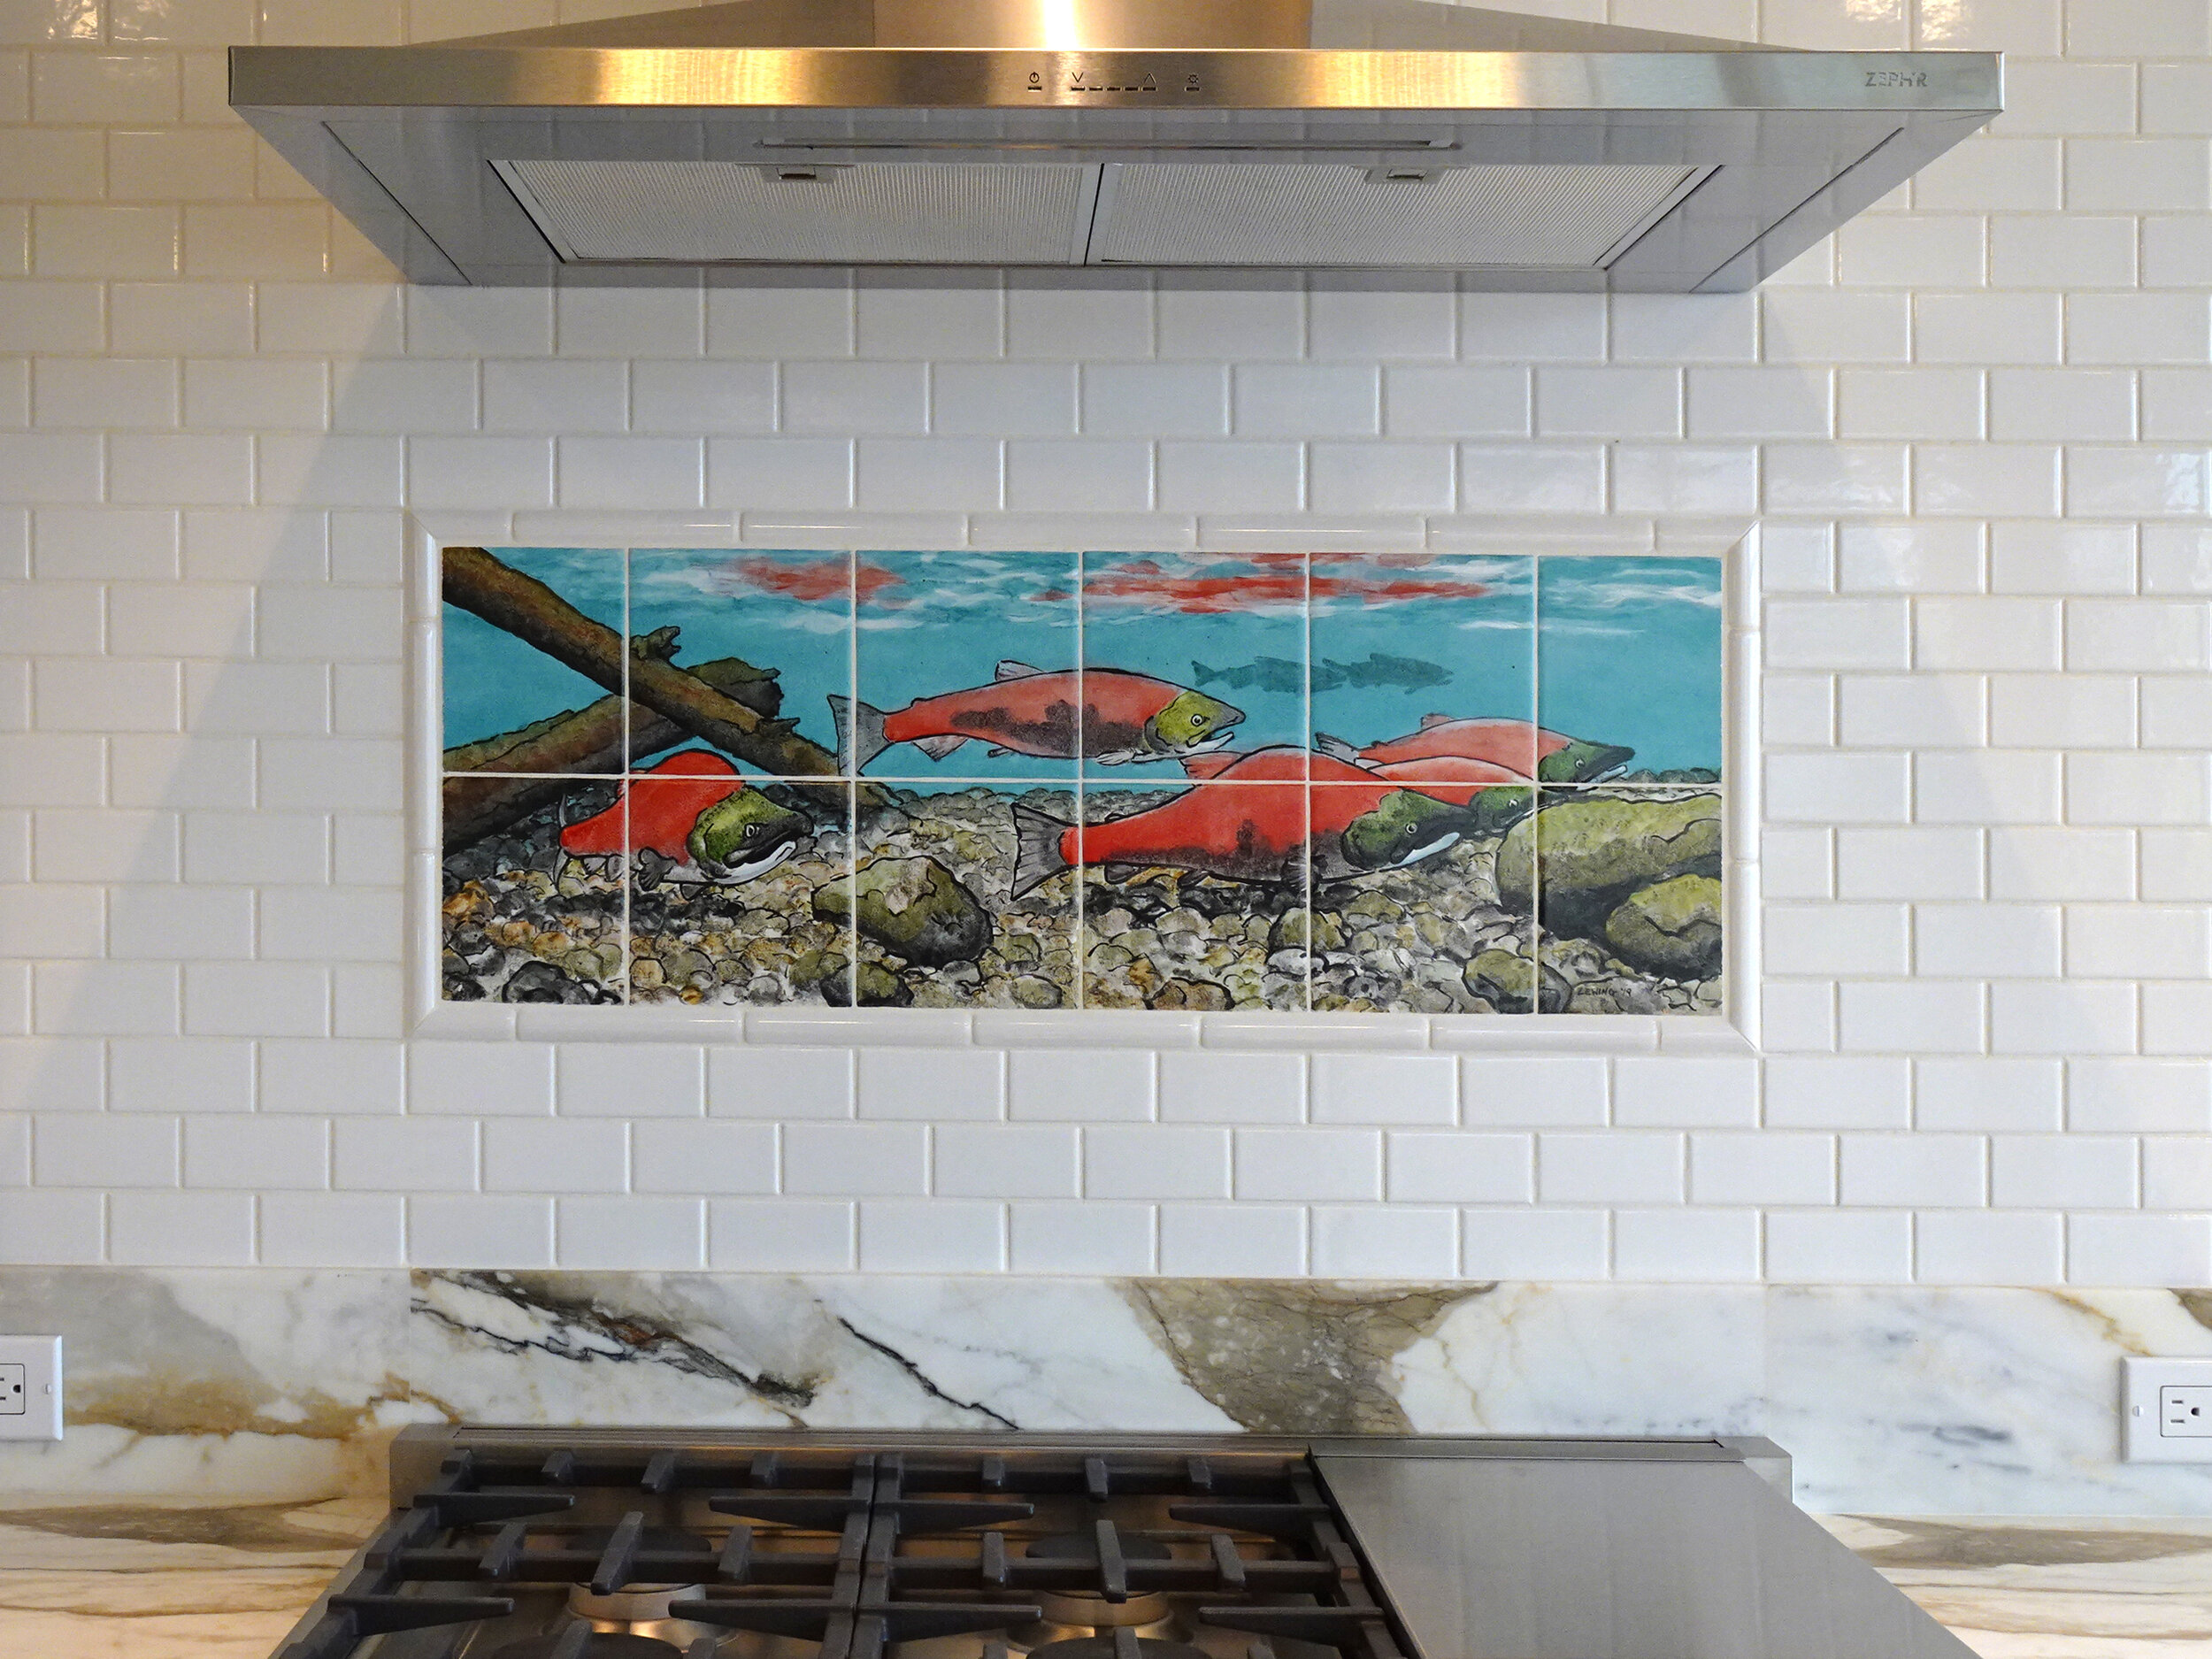 inspiring design: the art of the kitchen backsplash – clé tile